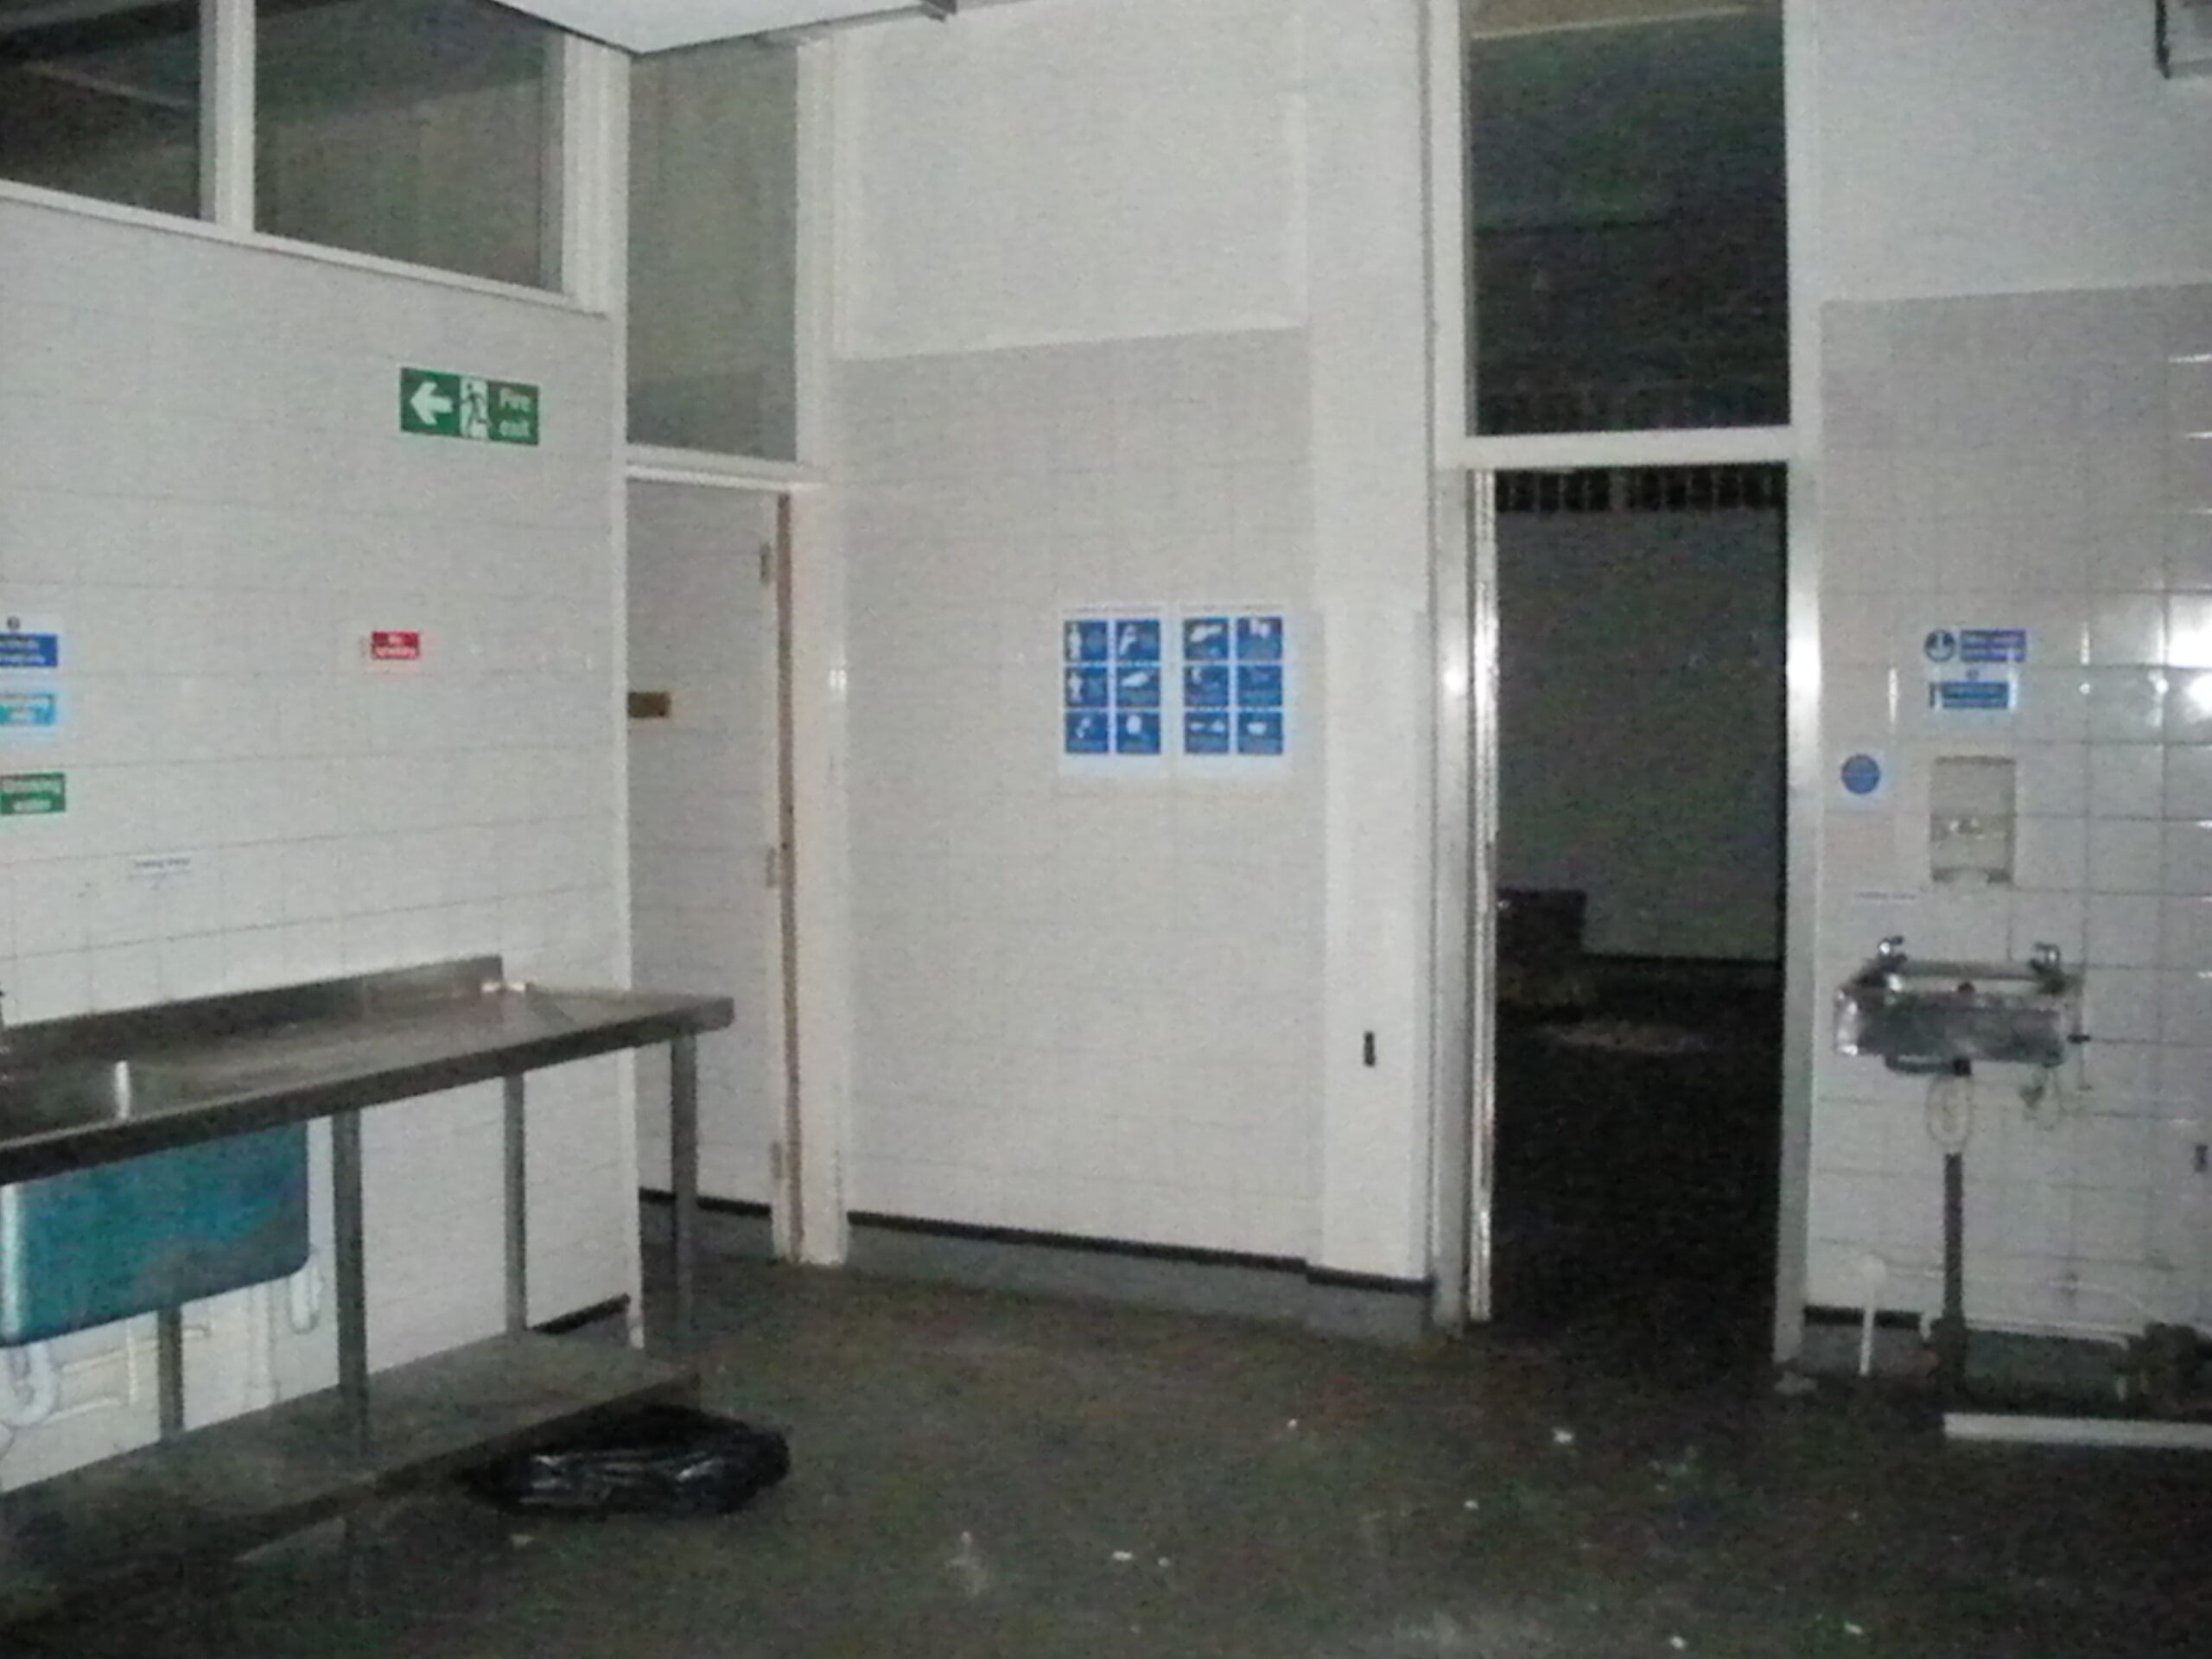 Staff Restaurant kitchens, 13 Sep 2011